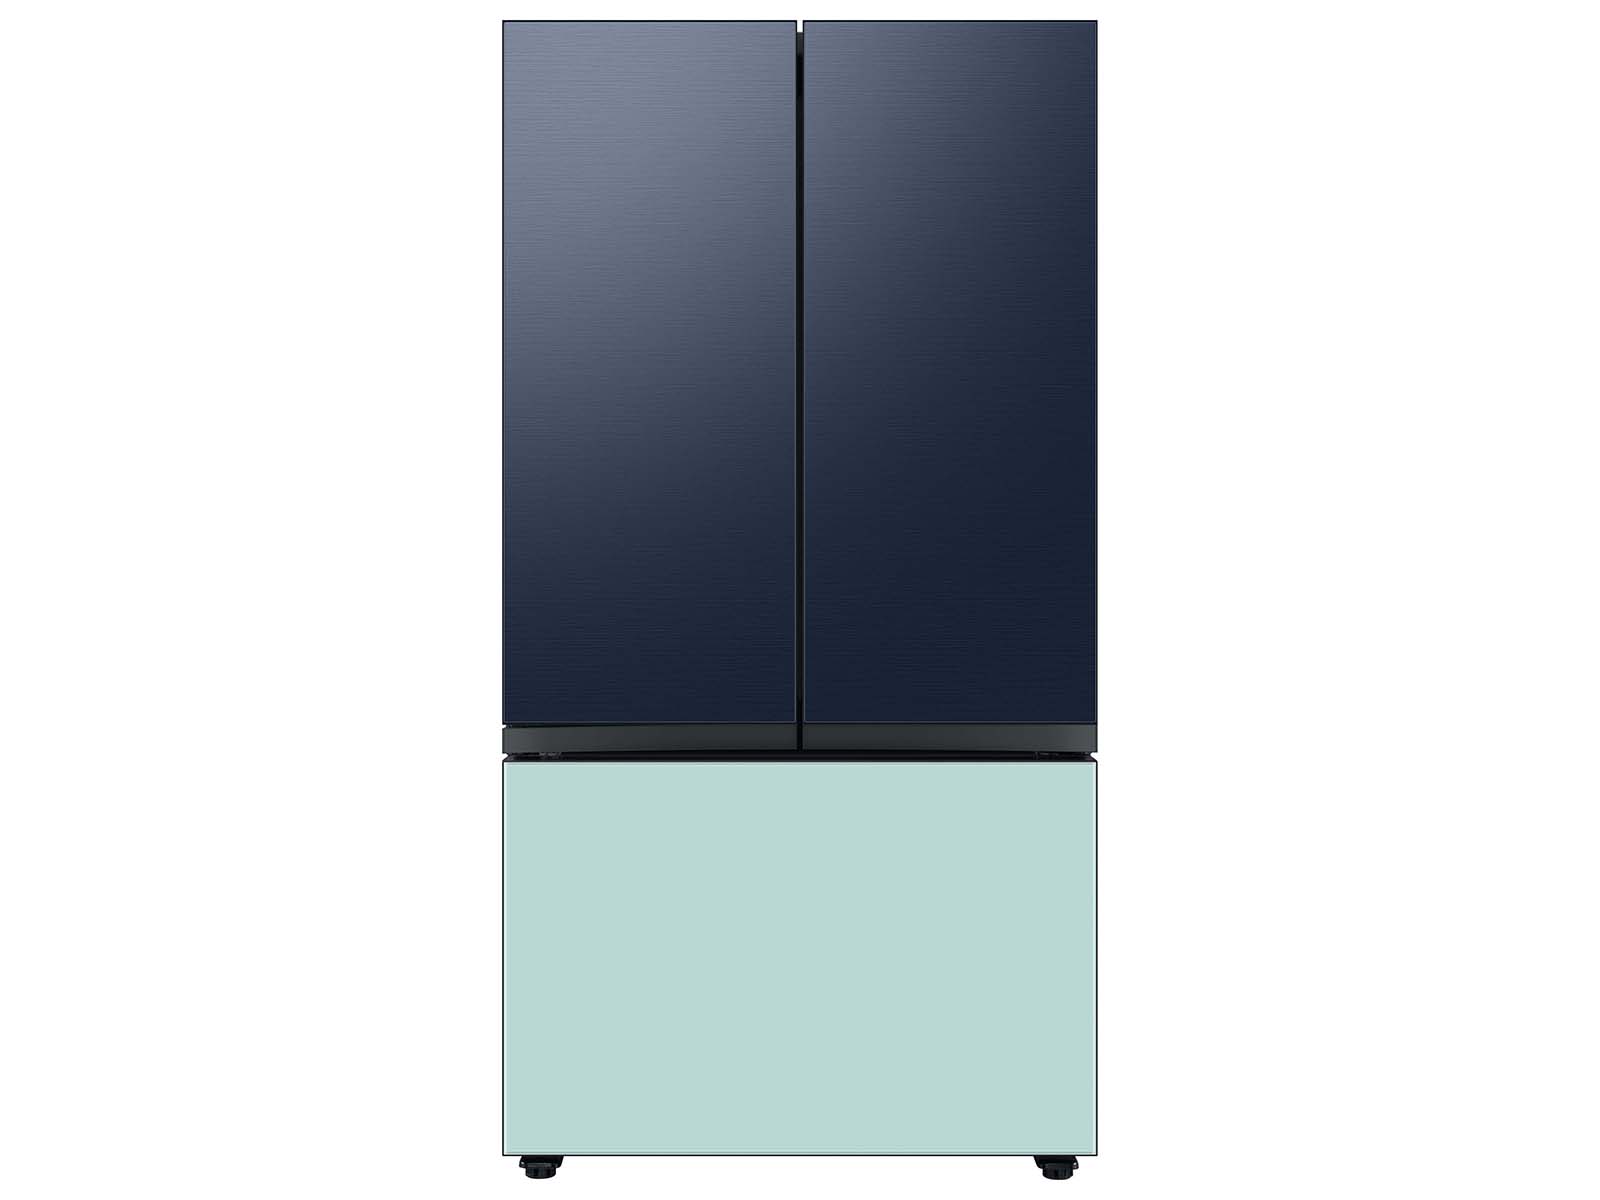 Thumbnail image of Bespoke 3-Door French Door Refrigerator Panel in Navy Steel - Top Panel